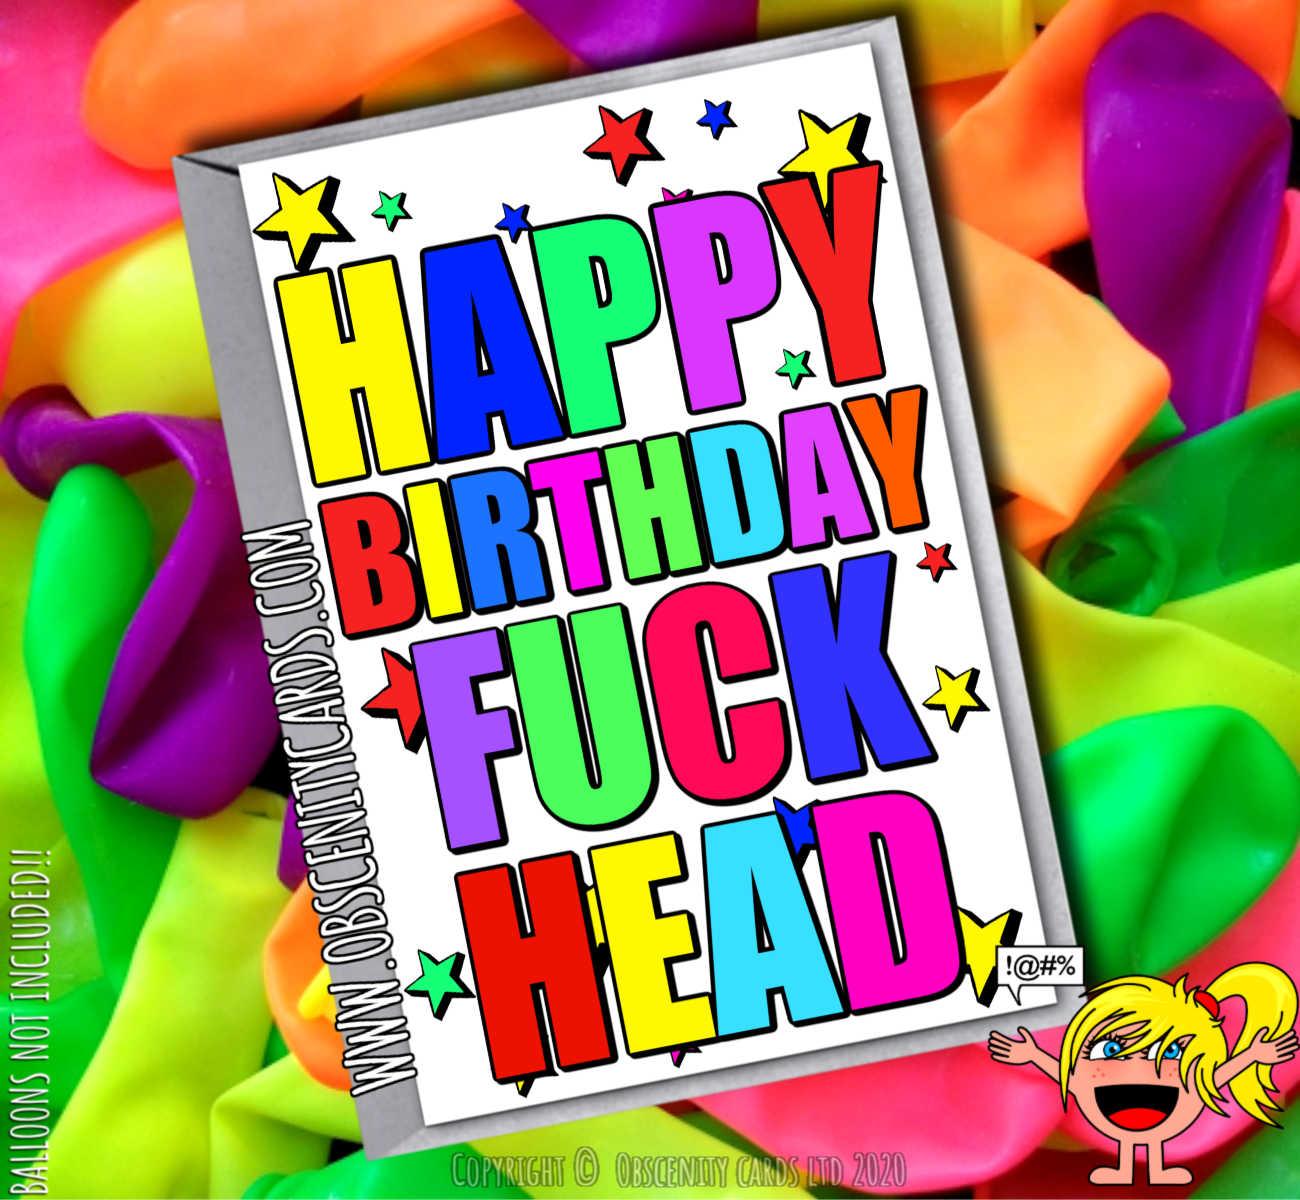 HAPPY BIRTHDAY FUCK HEAD FUNNY CARD